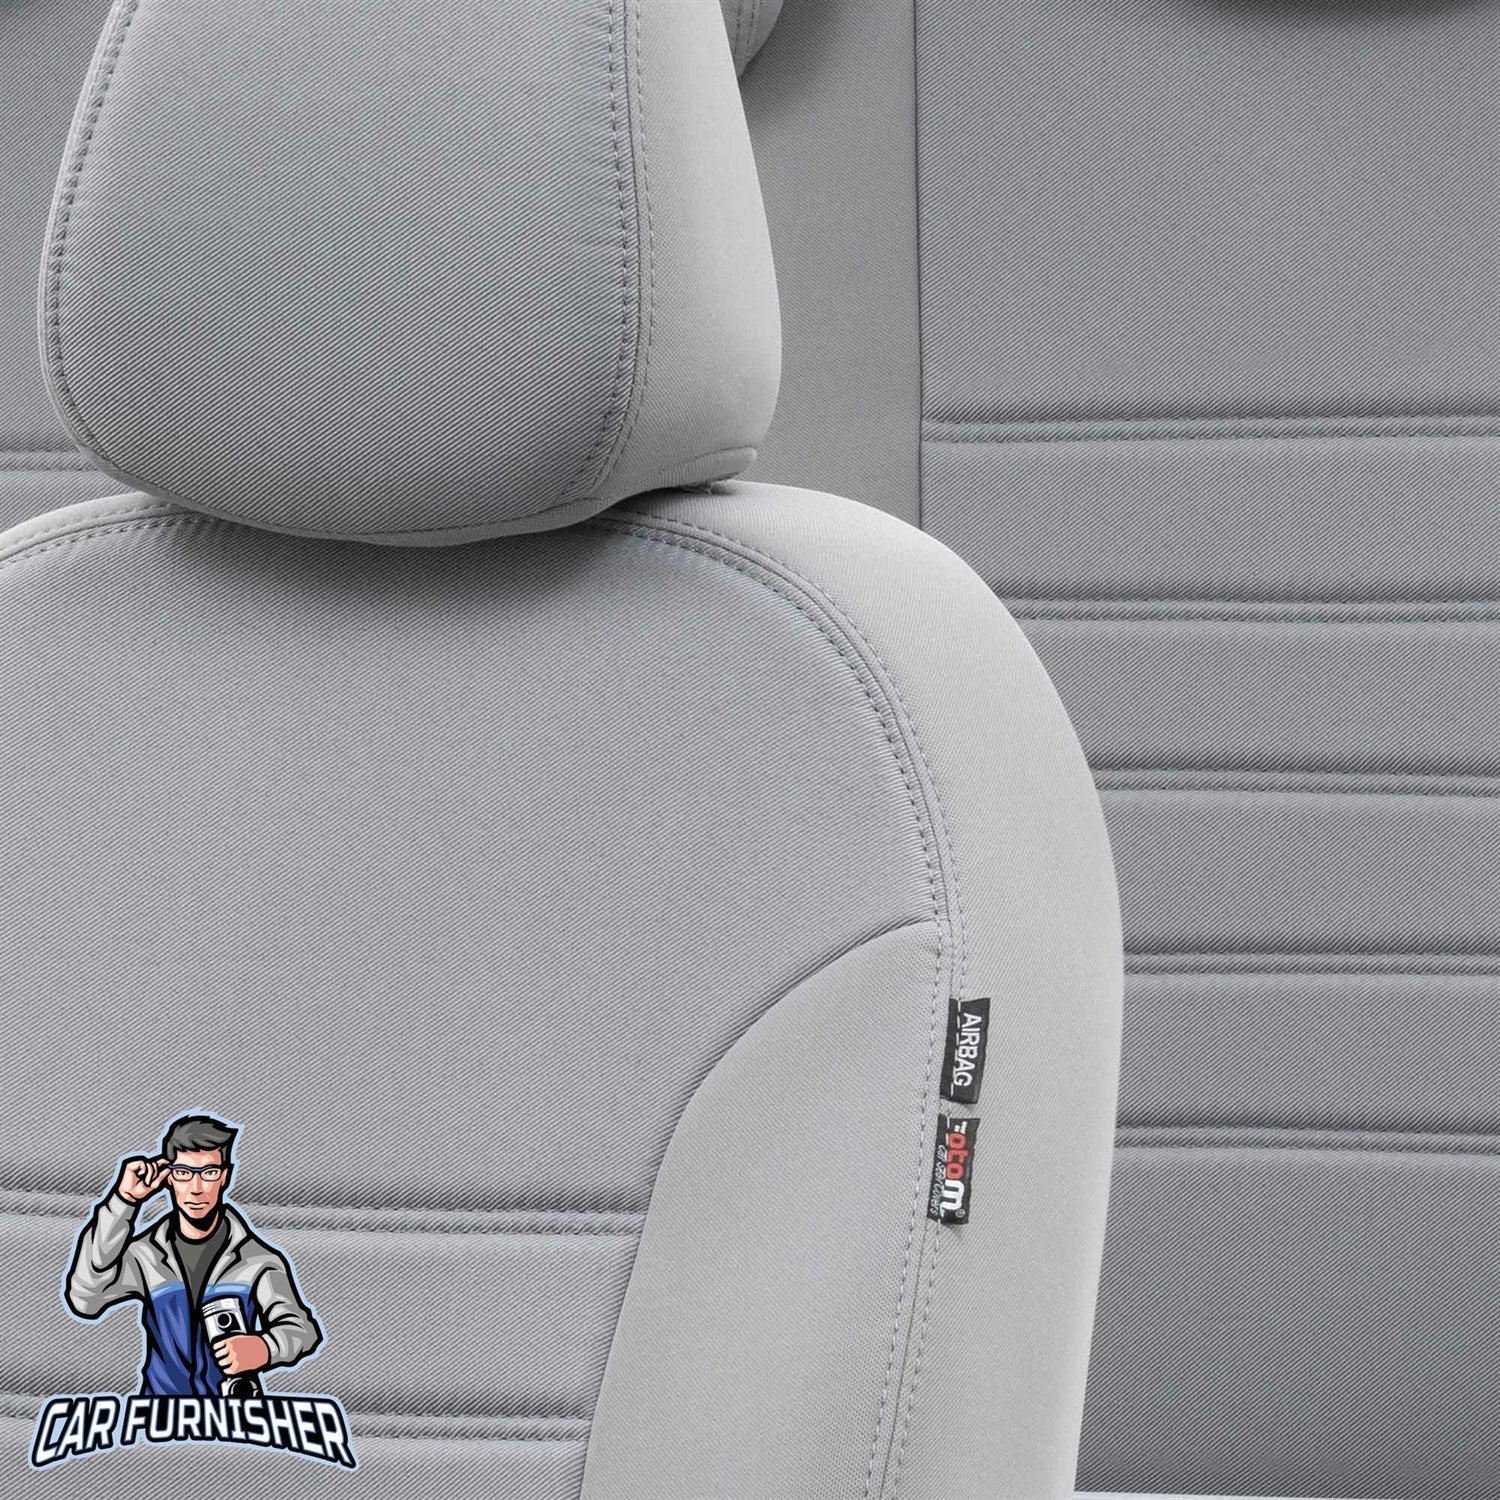 Hyundai i20 Seat Covers Original Jacquard Design Light Gray Jacquard Fabric